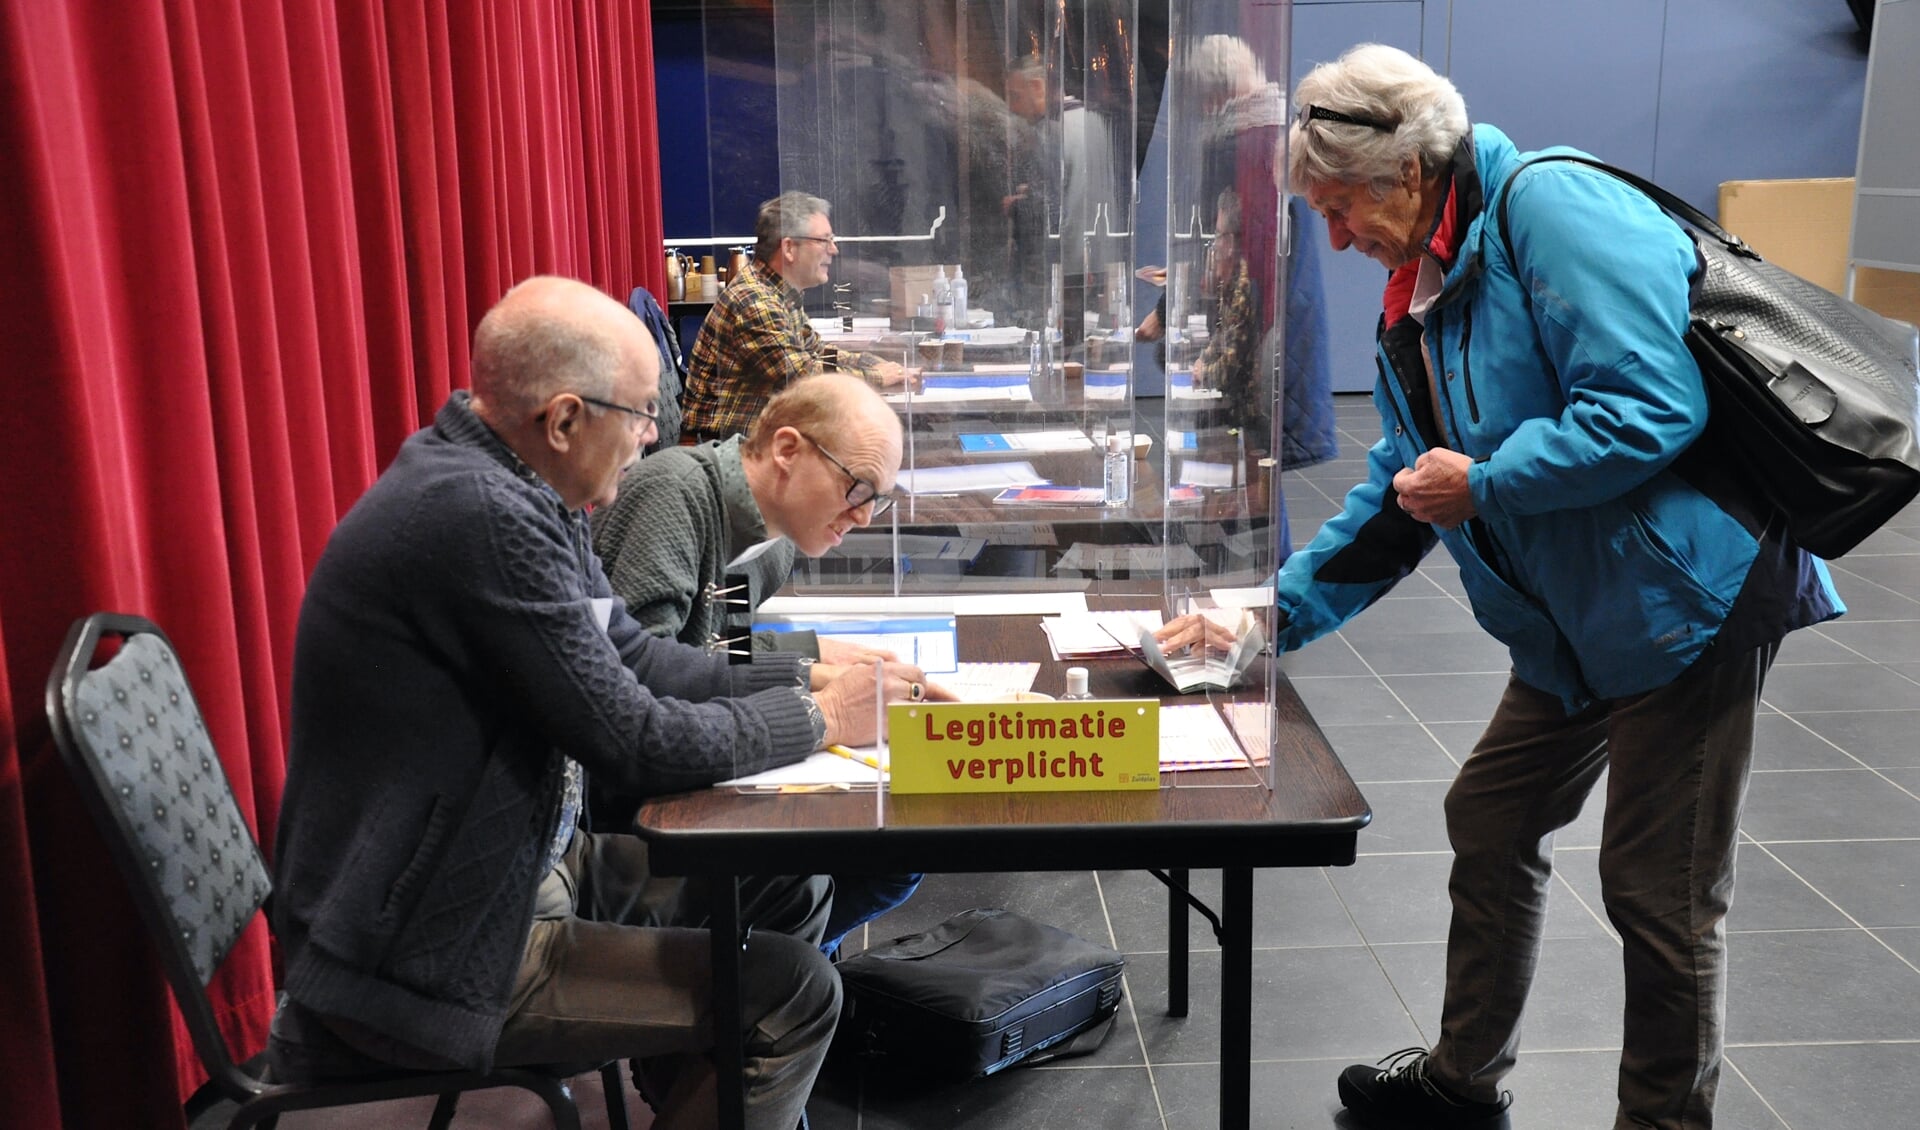 Ivo de Graad met Rens den Hollander aan het werk in het stembureau. (tekst: Erik van Leeuwen/foto: Judith Rikken)